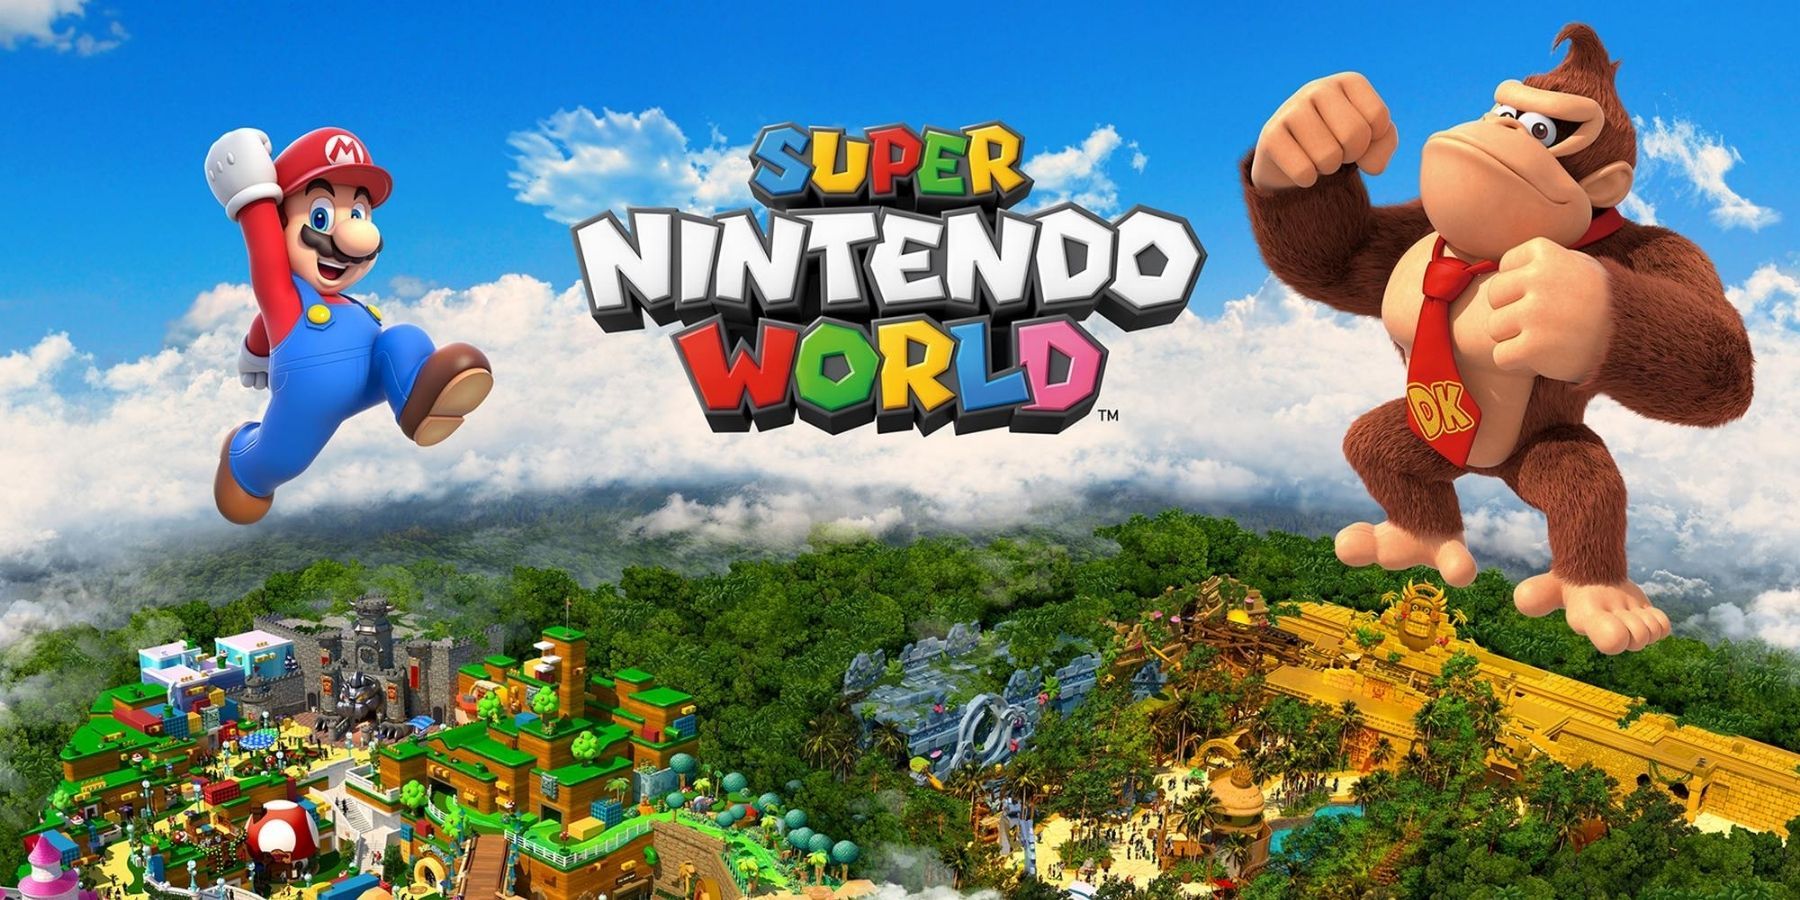 Az összes pletyka látványosság a Super Nintendo World Donkey Kong bővítésén